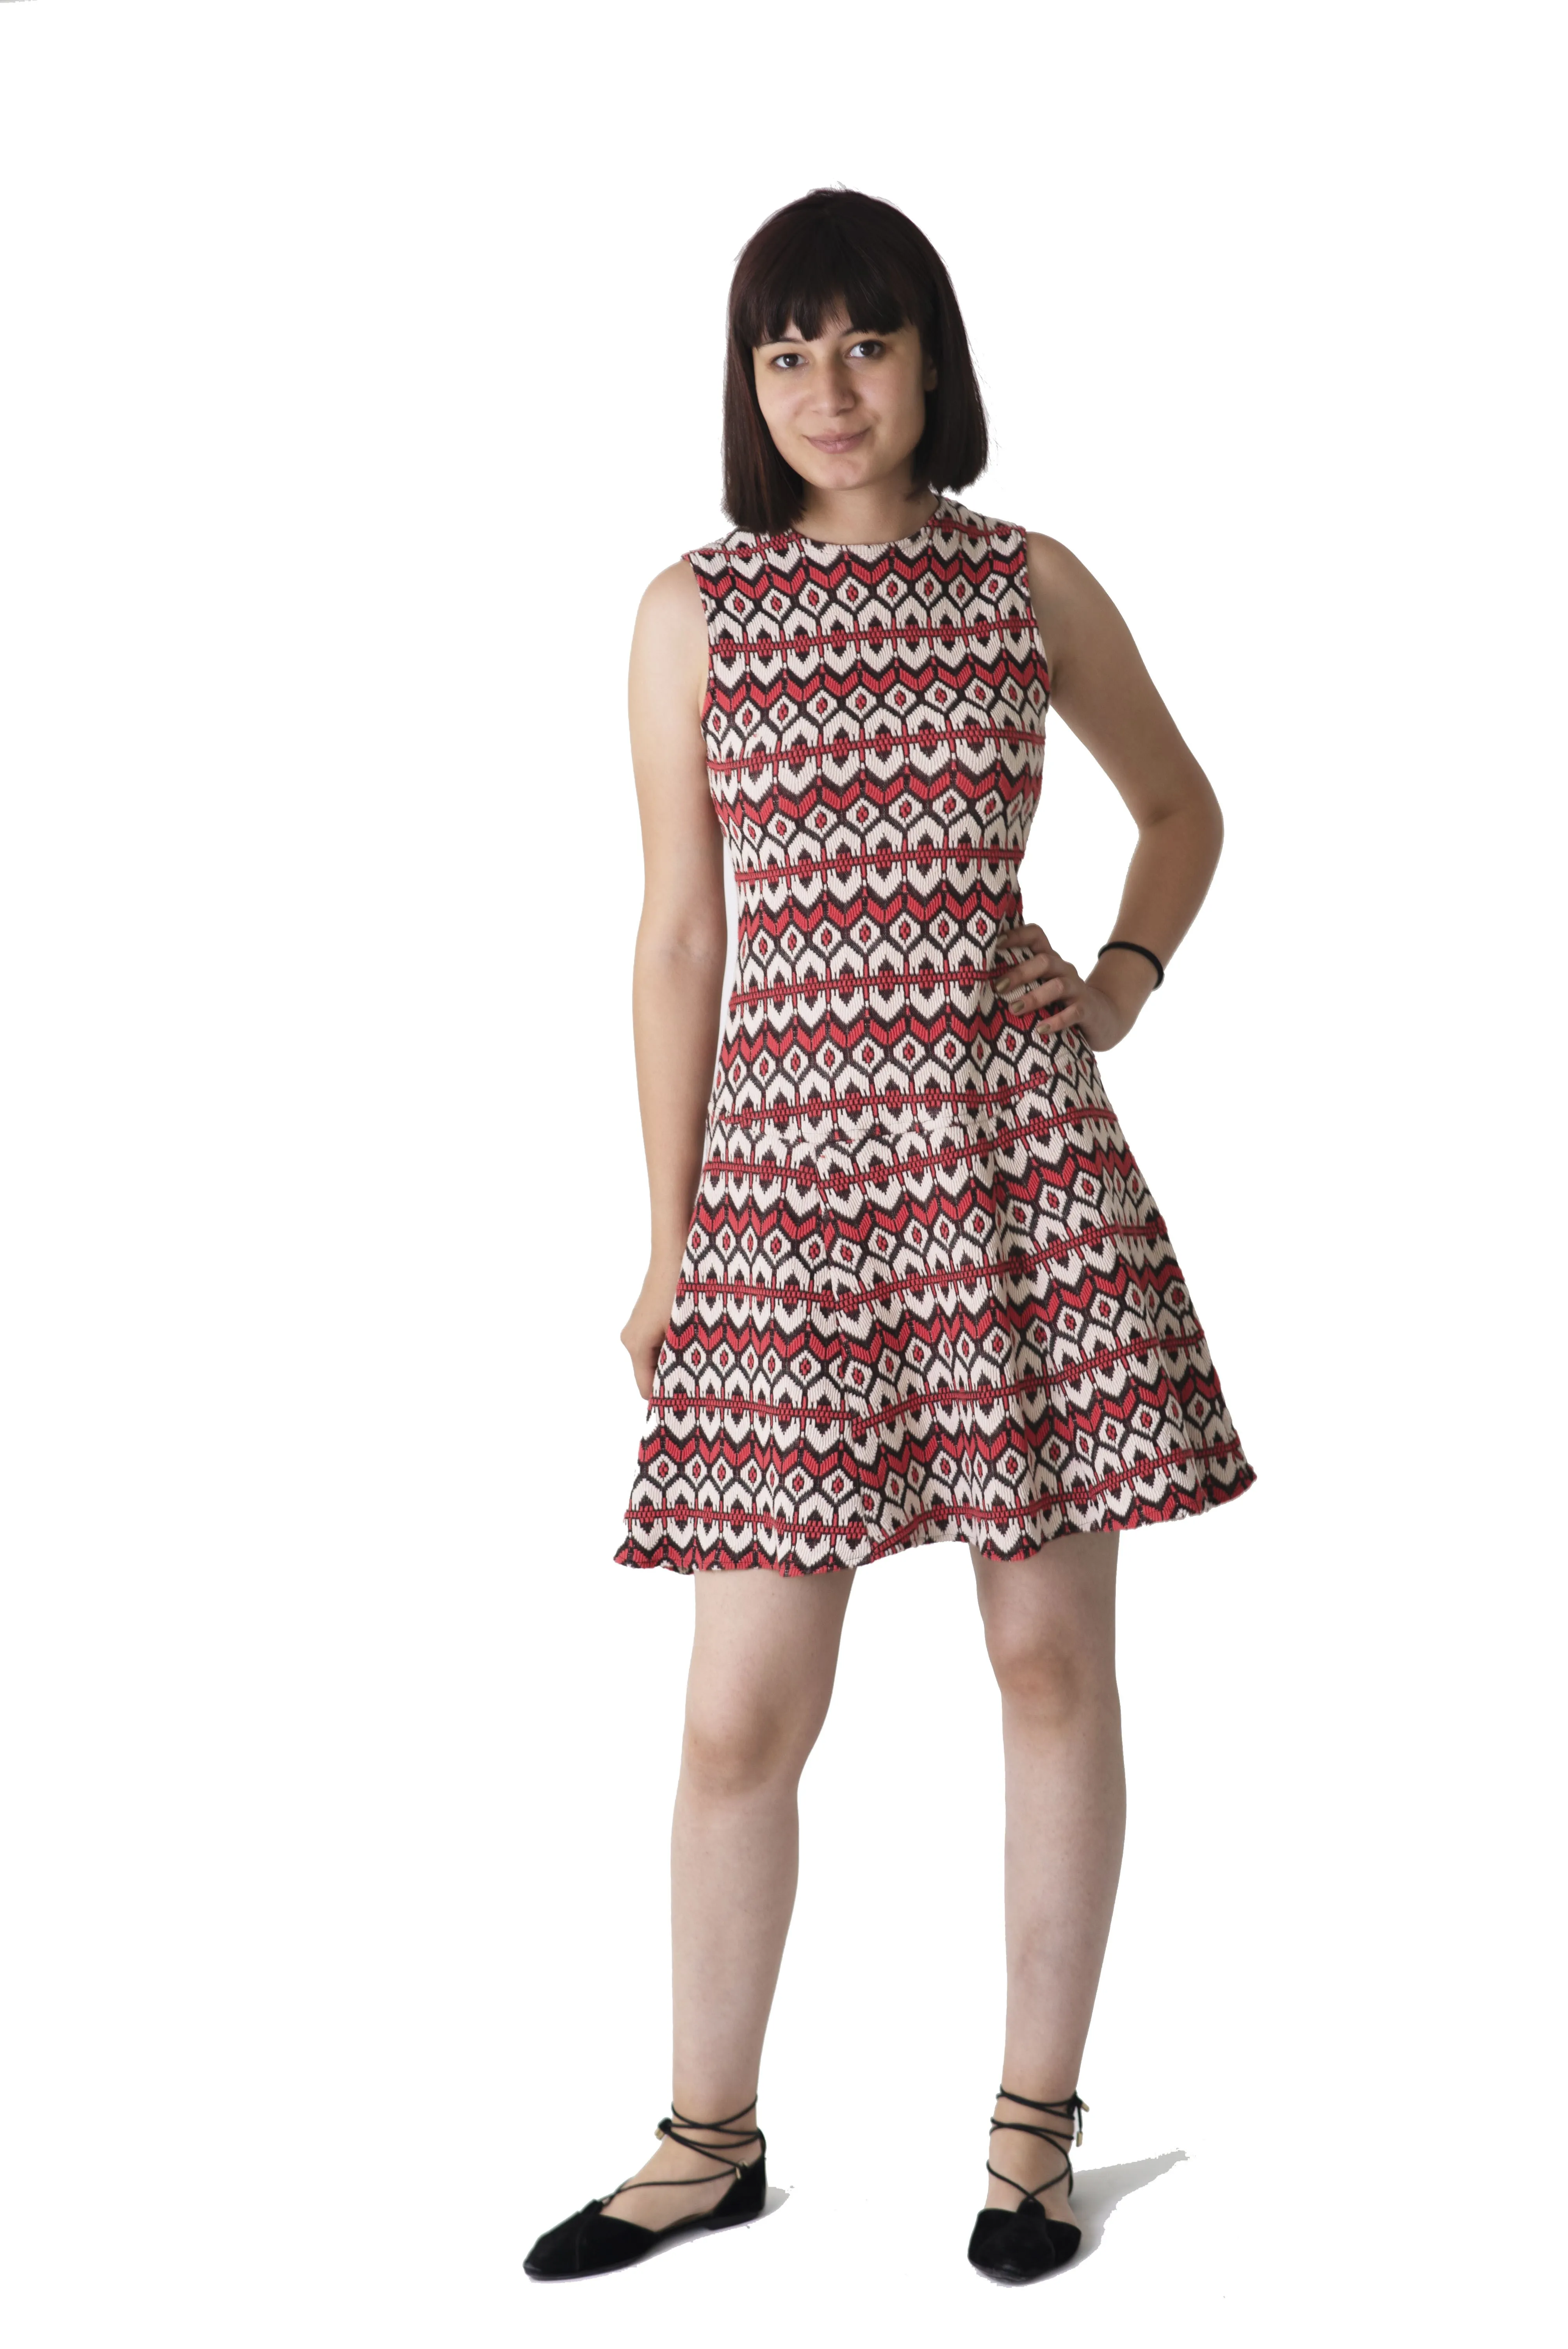 Свитер красное женское платье от AliExpress RU&CIS NEW